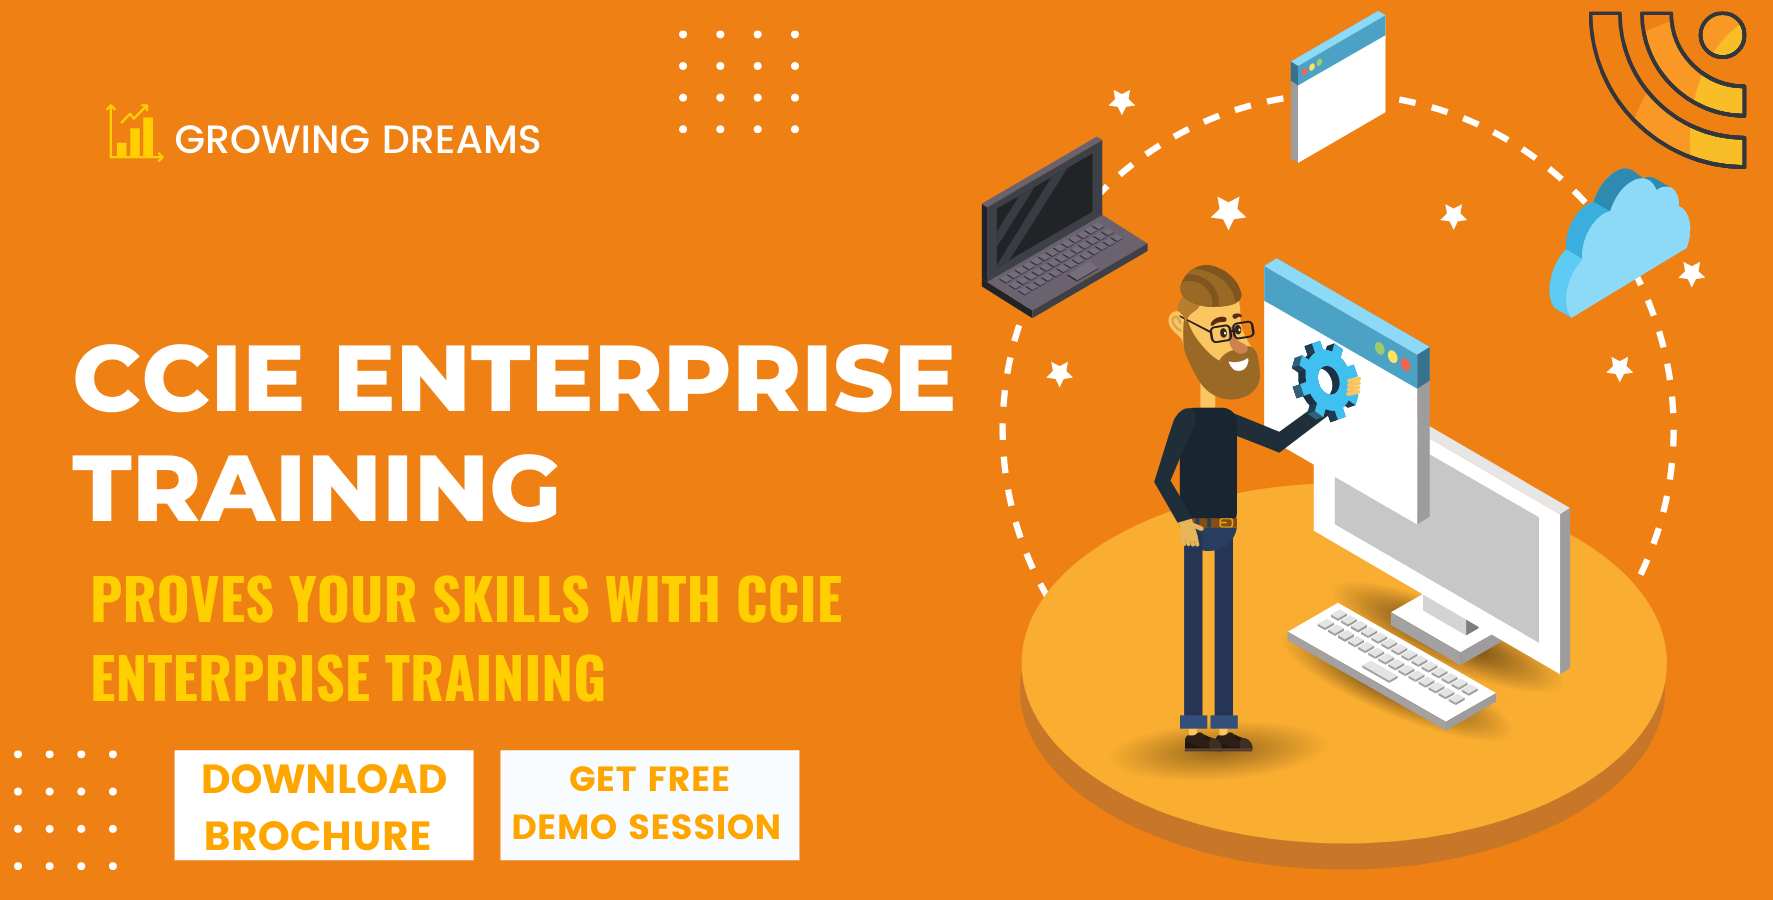 CCIE Enterprise training